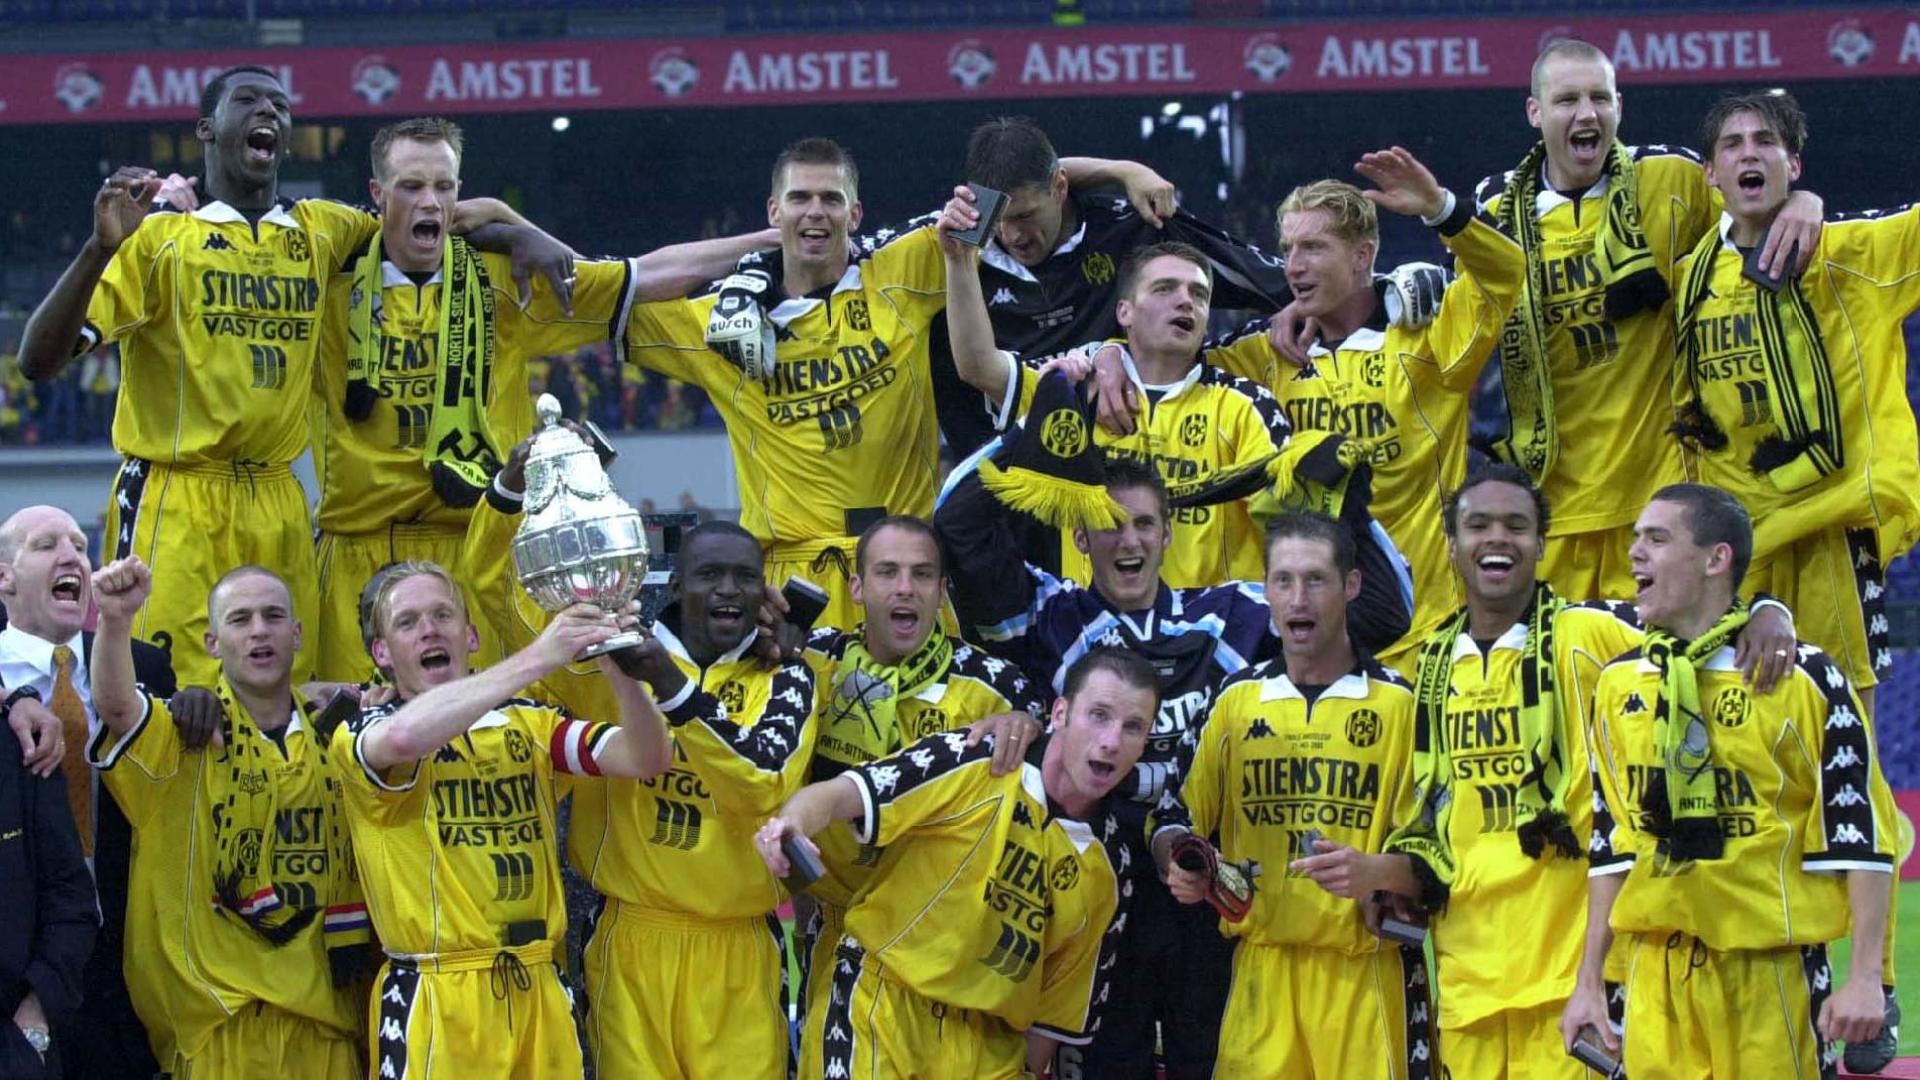 KNVB beker 1997: Alsof we de wereldcup wonnen | KNVB